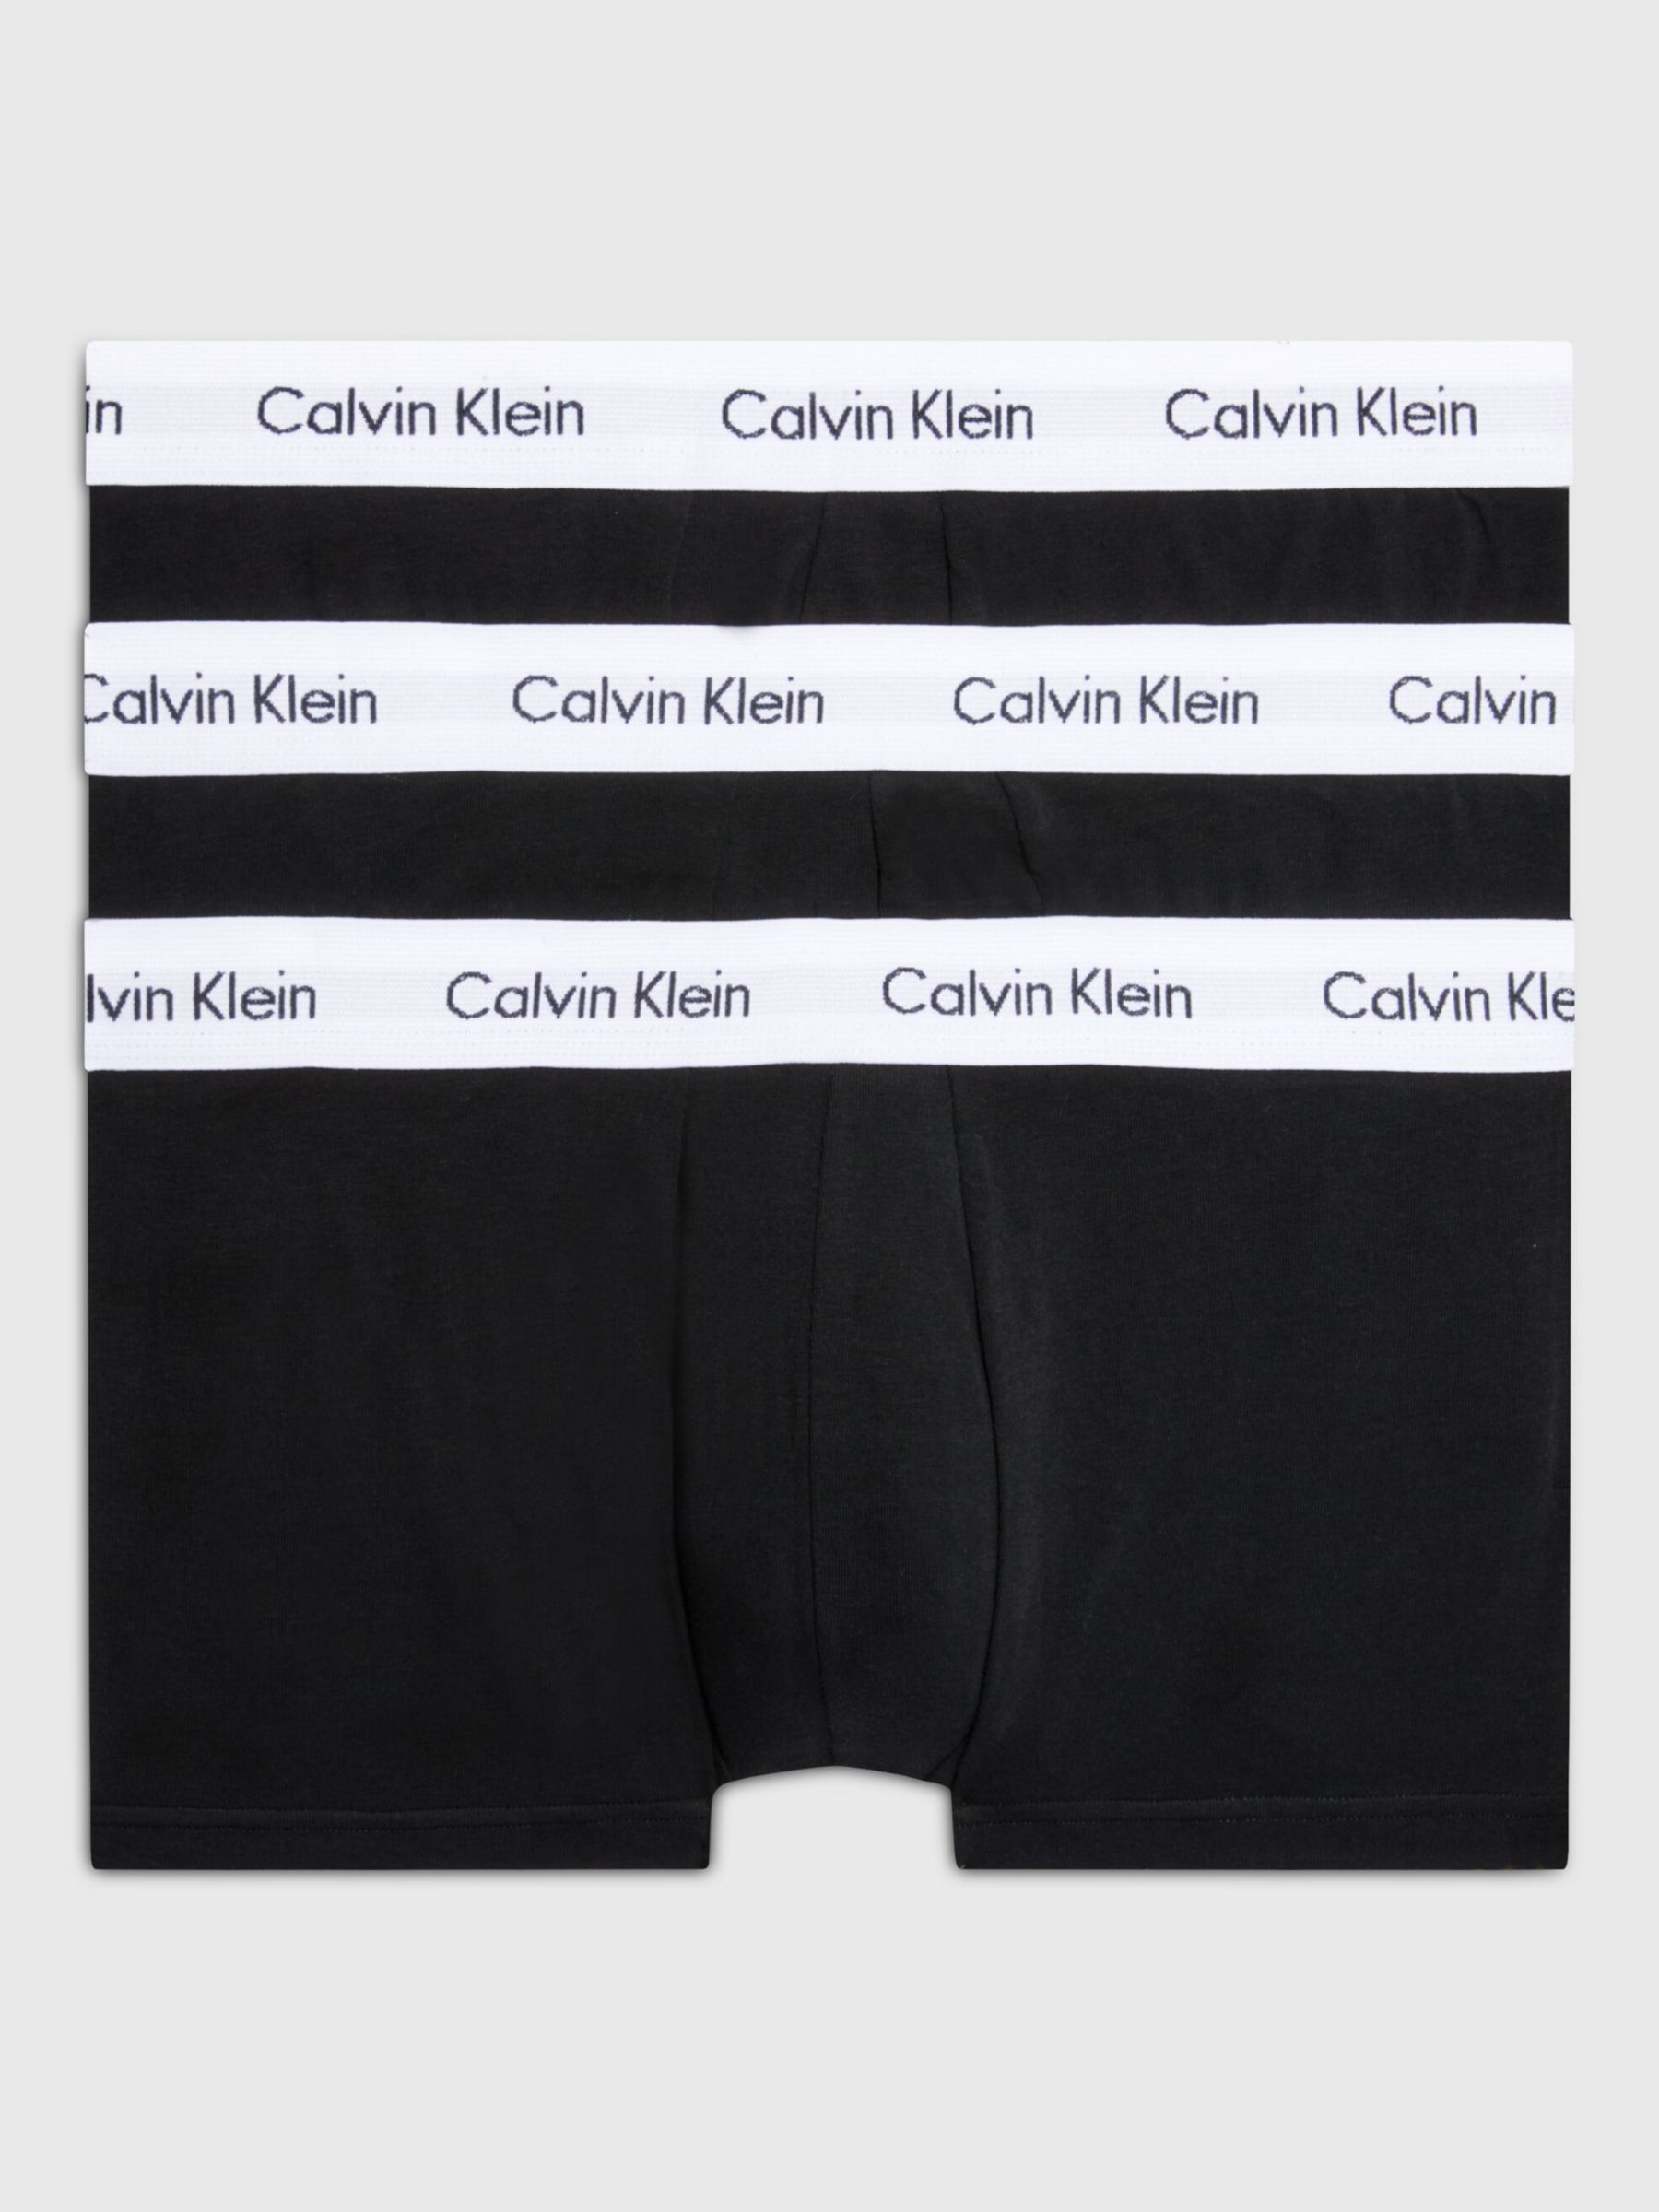 Calvin Klein Underwear 3 Pack Modern Cotton Stretch Low Rise